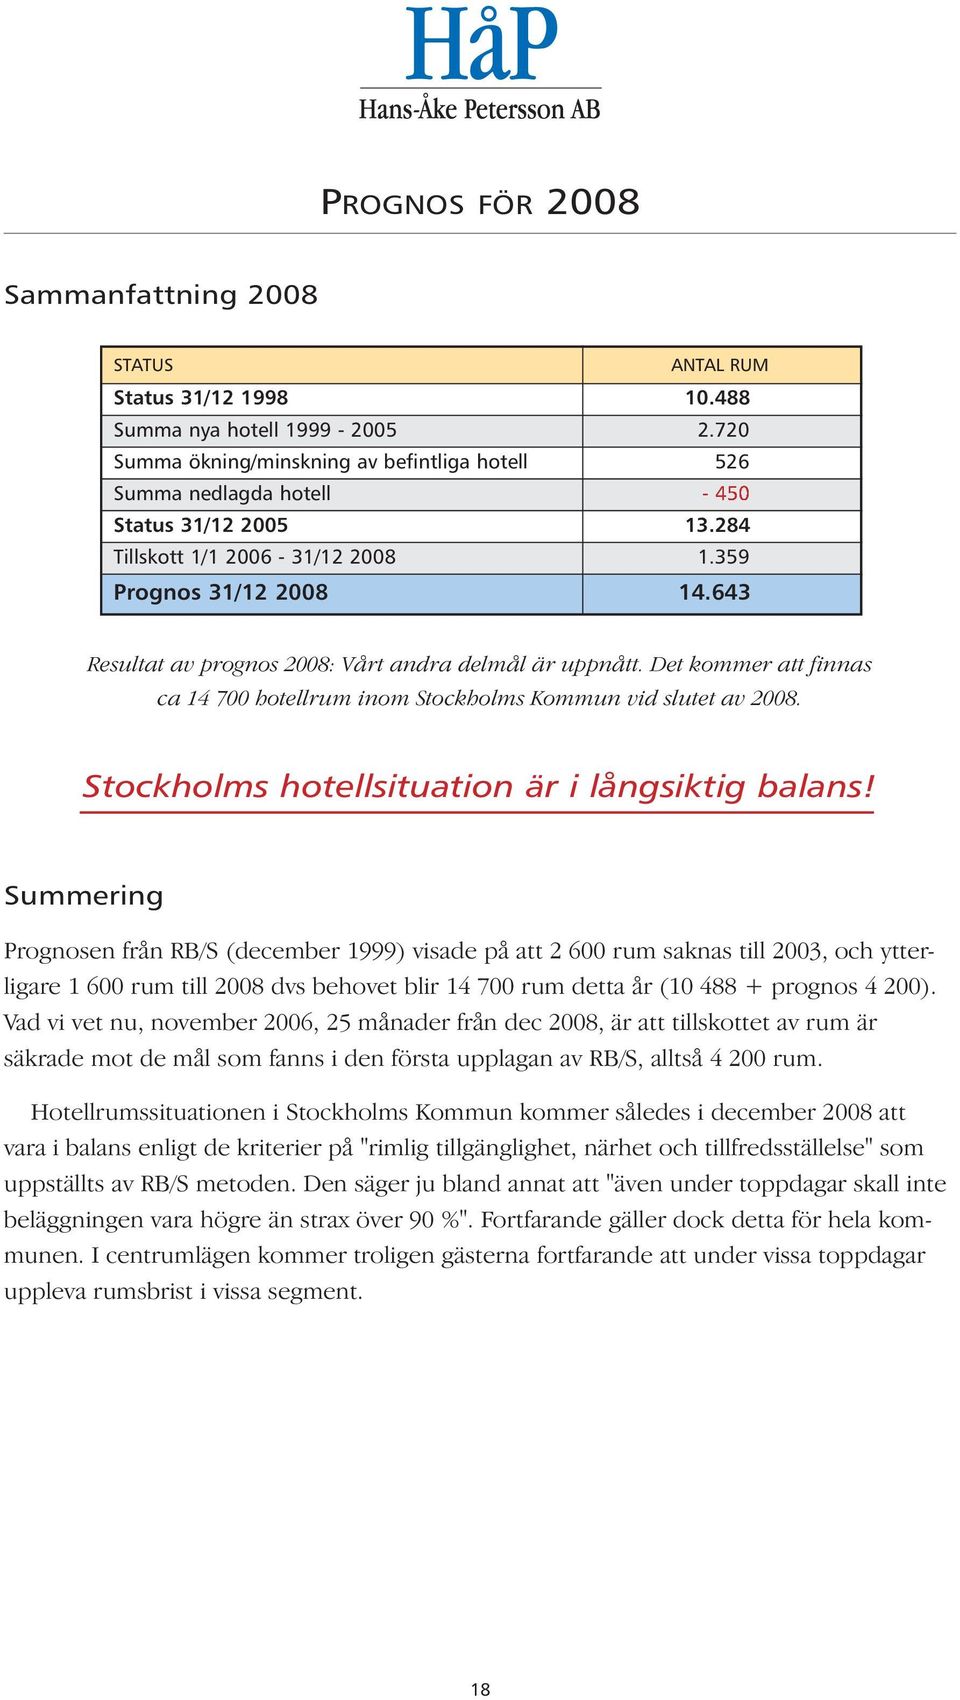 643 Resultat av prognos 2008: Vårt andra delmål är uppnått. Det kommer att finnas ca 14 700 hotellrum inom Stockholms Kommun vid slutet av 2008. Stockholms hotellsituation är i långsiktig balans!